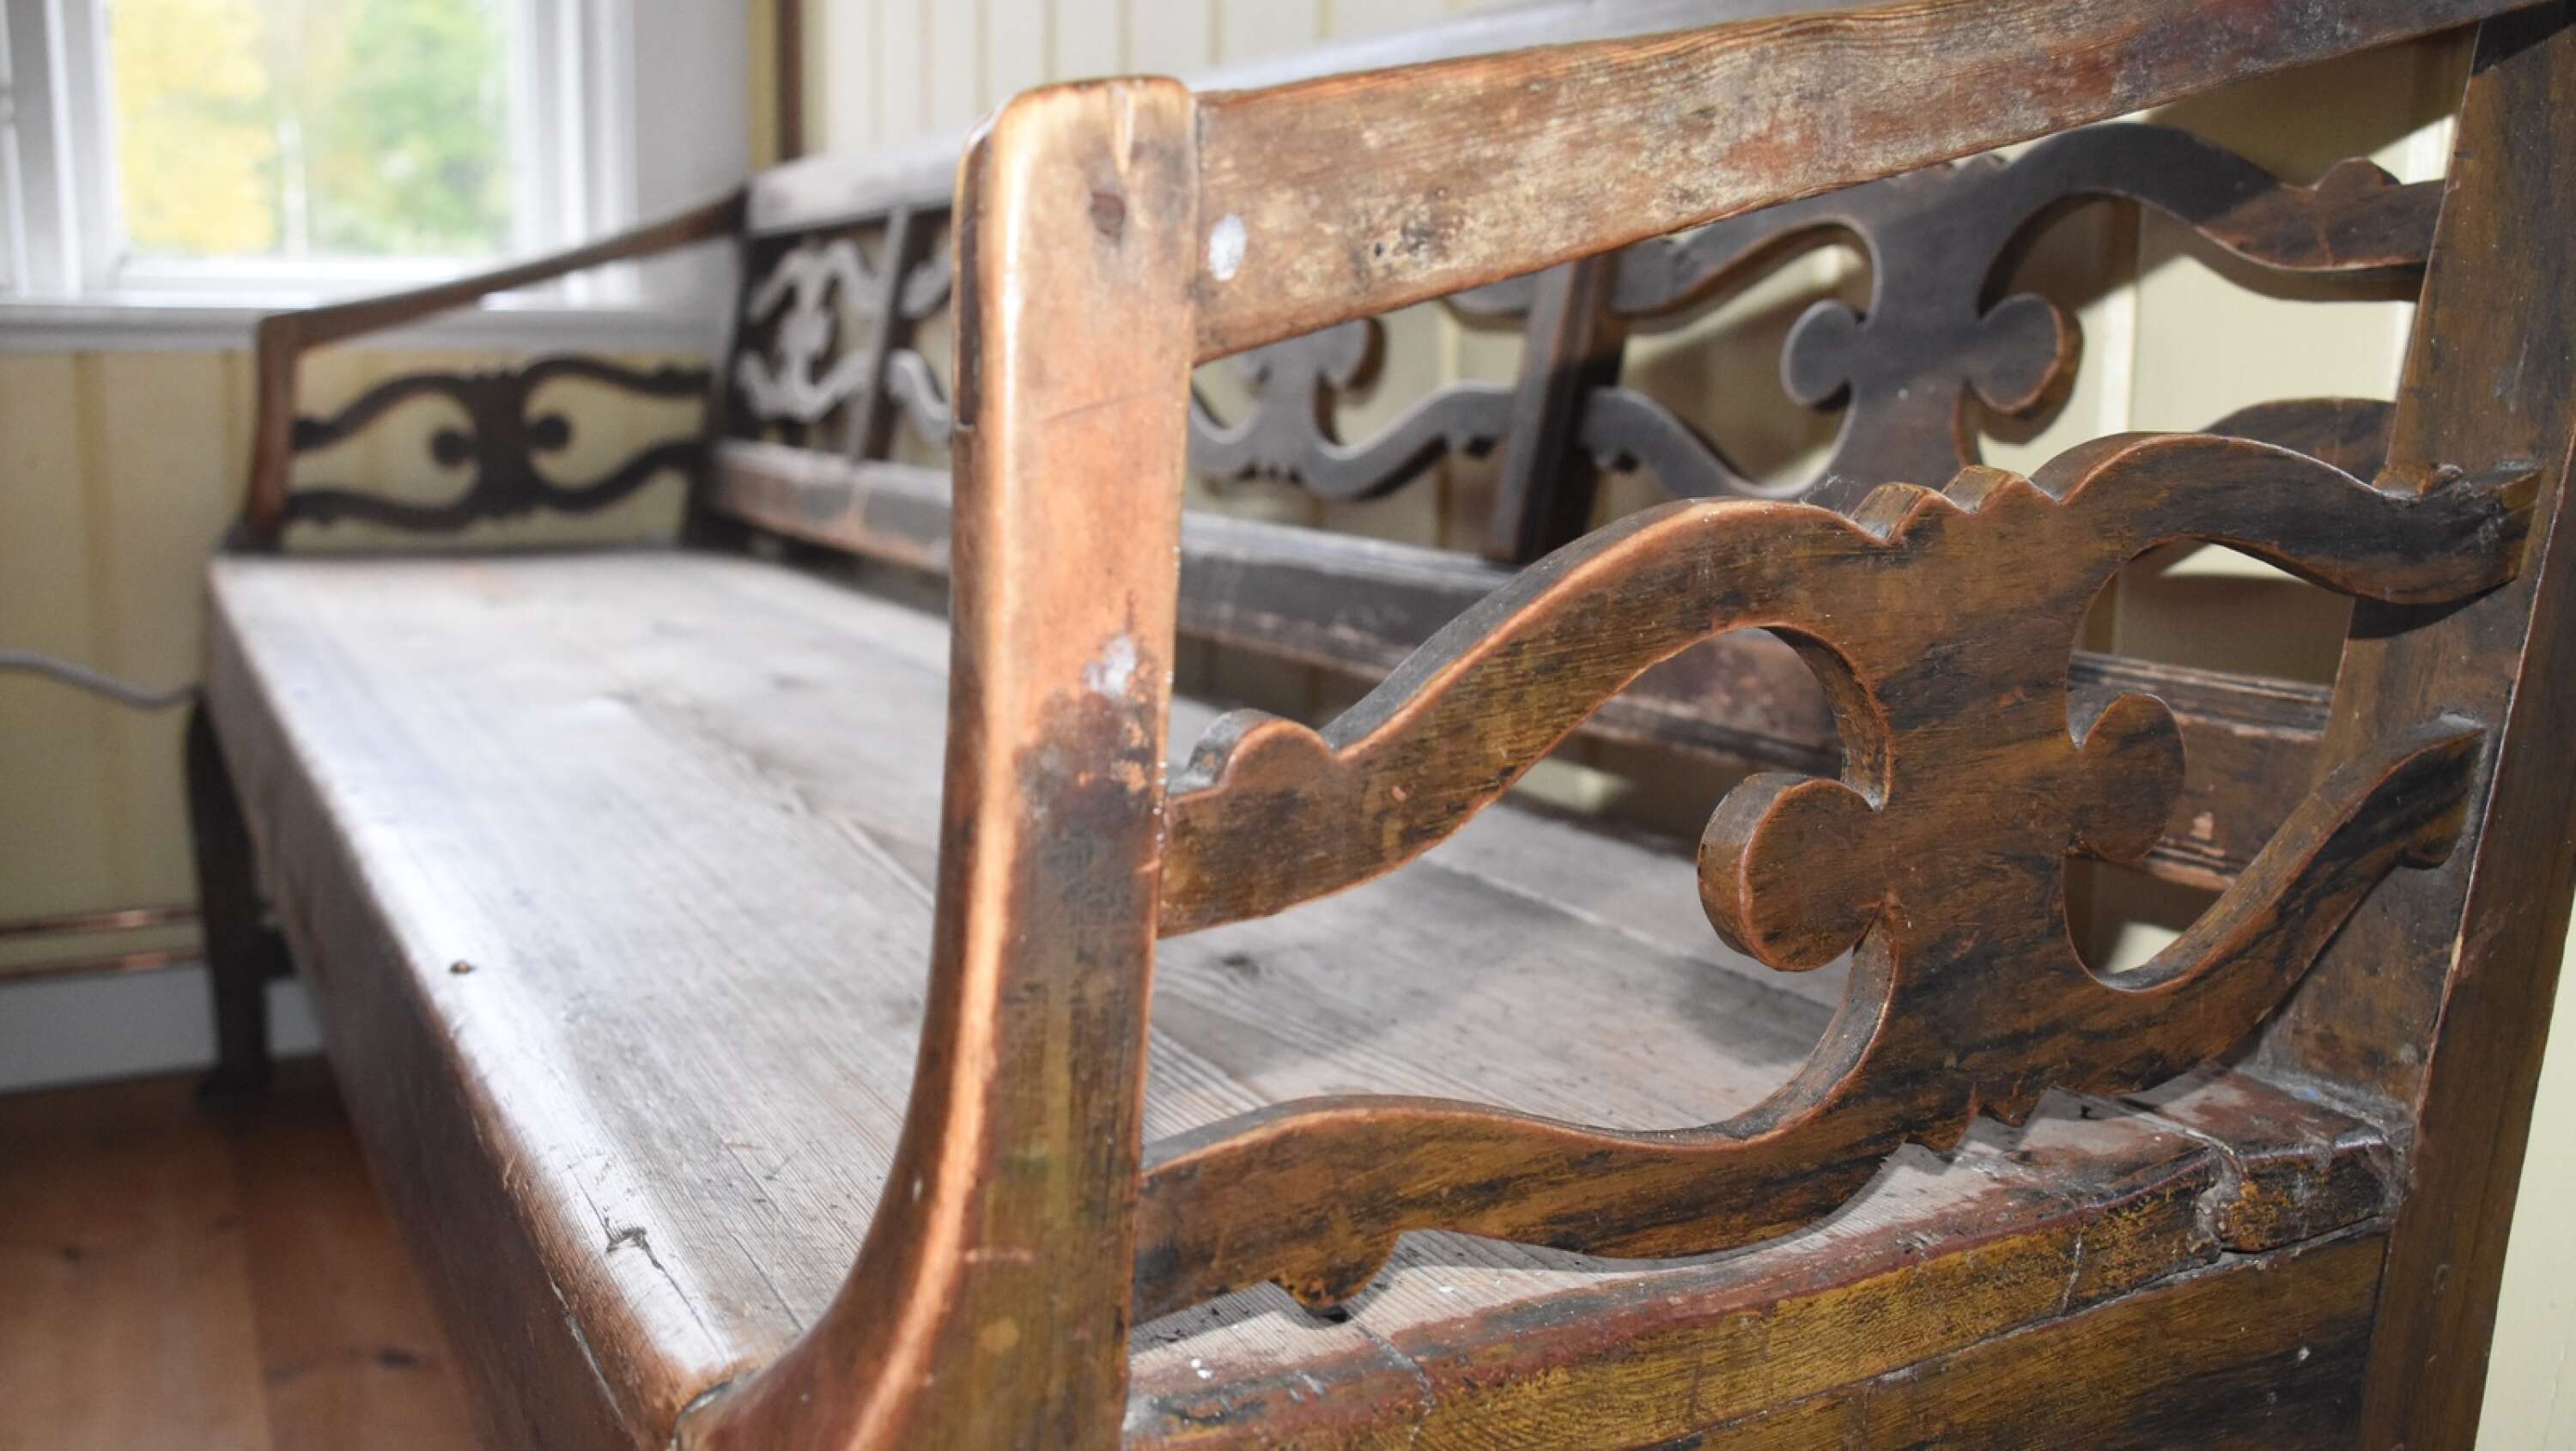 Soffan i Lillstugan är gårdens äldsta bevarade möbel. Den kan härledas till 1700-talet och finns omnämnd i boken ”Anor och minnen Svenska släktgårdar genom sekler” av Sigurd Örjangård.